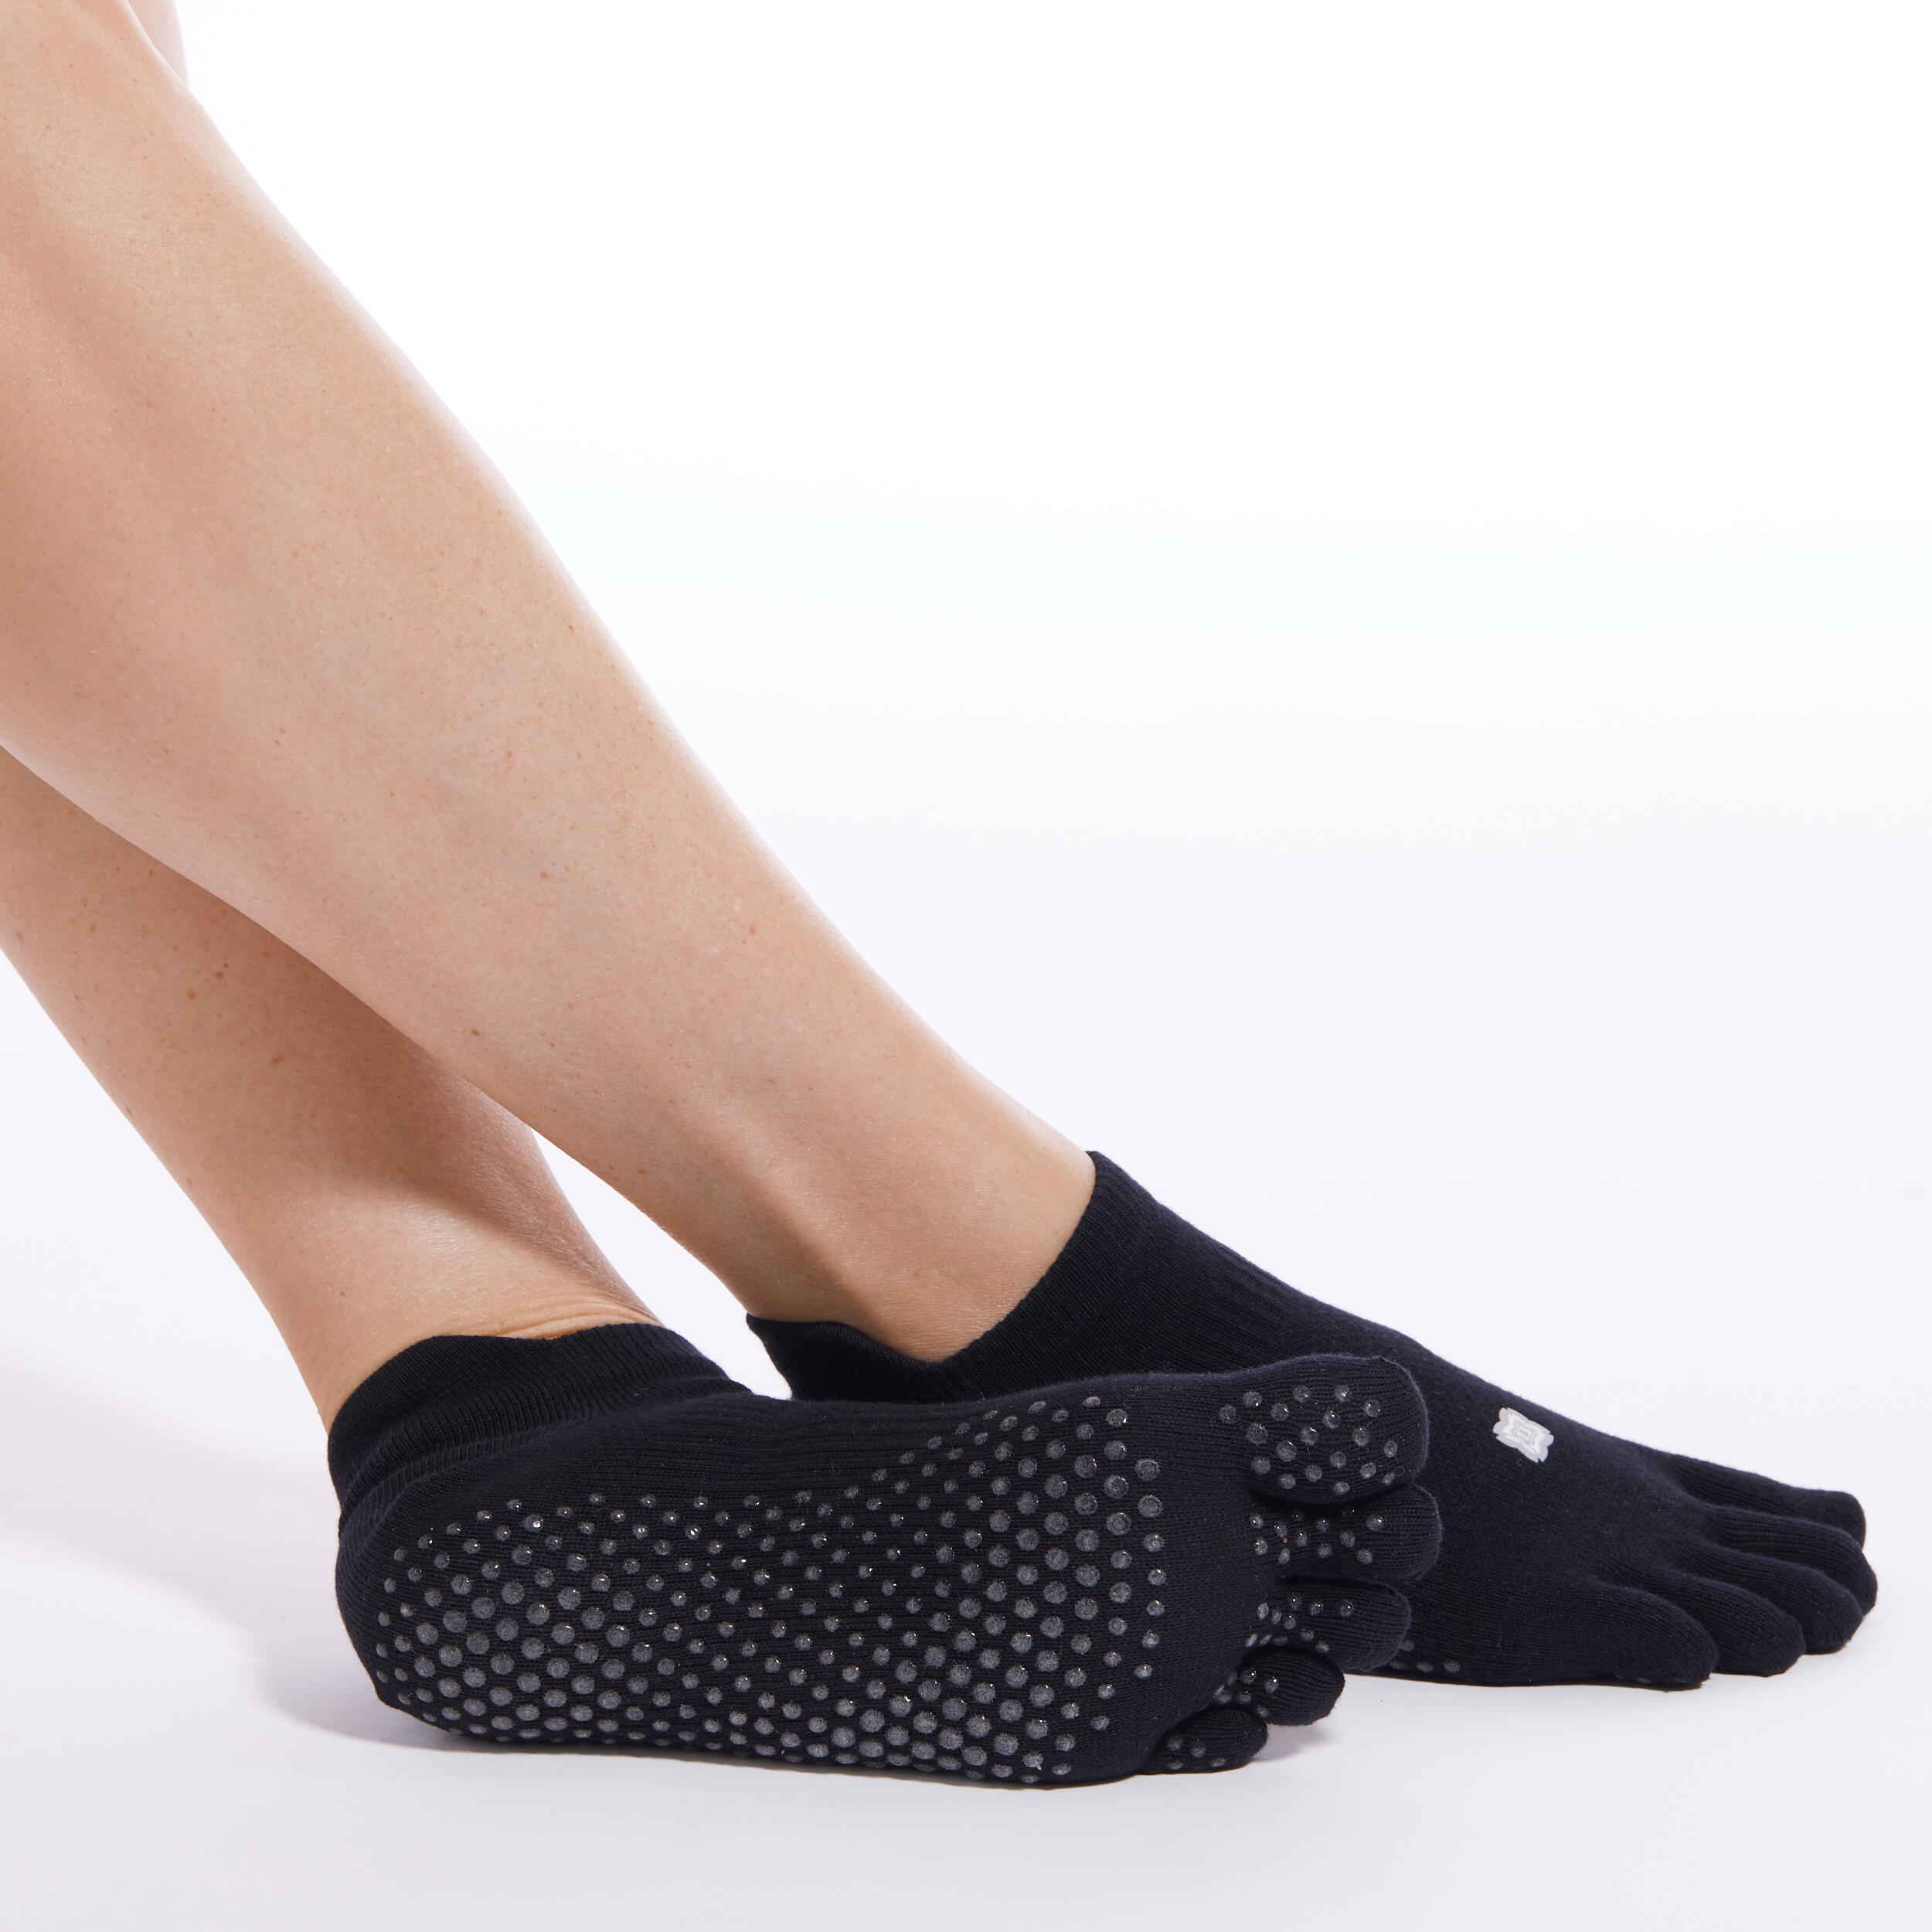 KIMJALY Non-Slip Yoga Toe Socks - Black